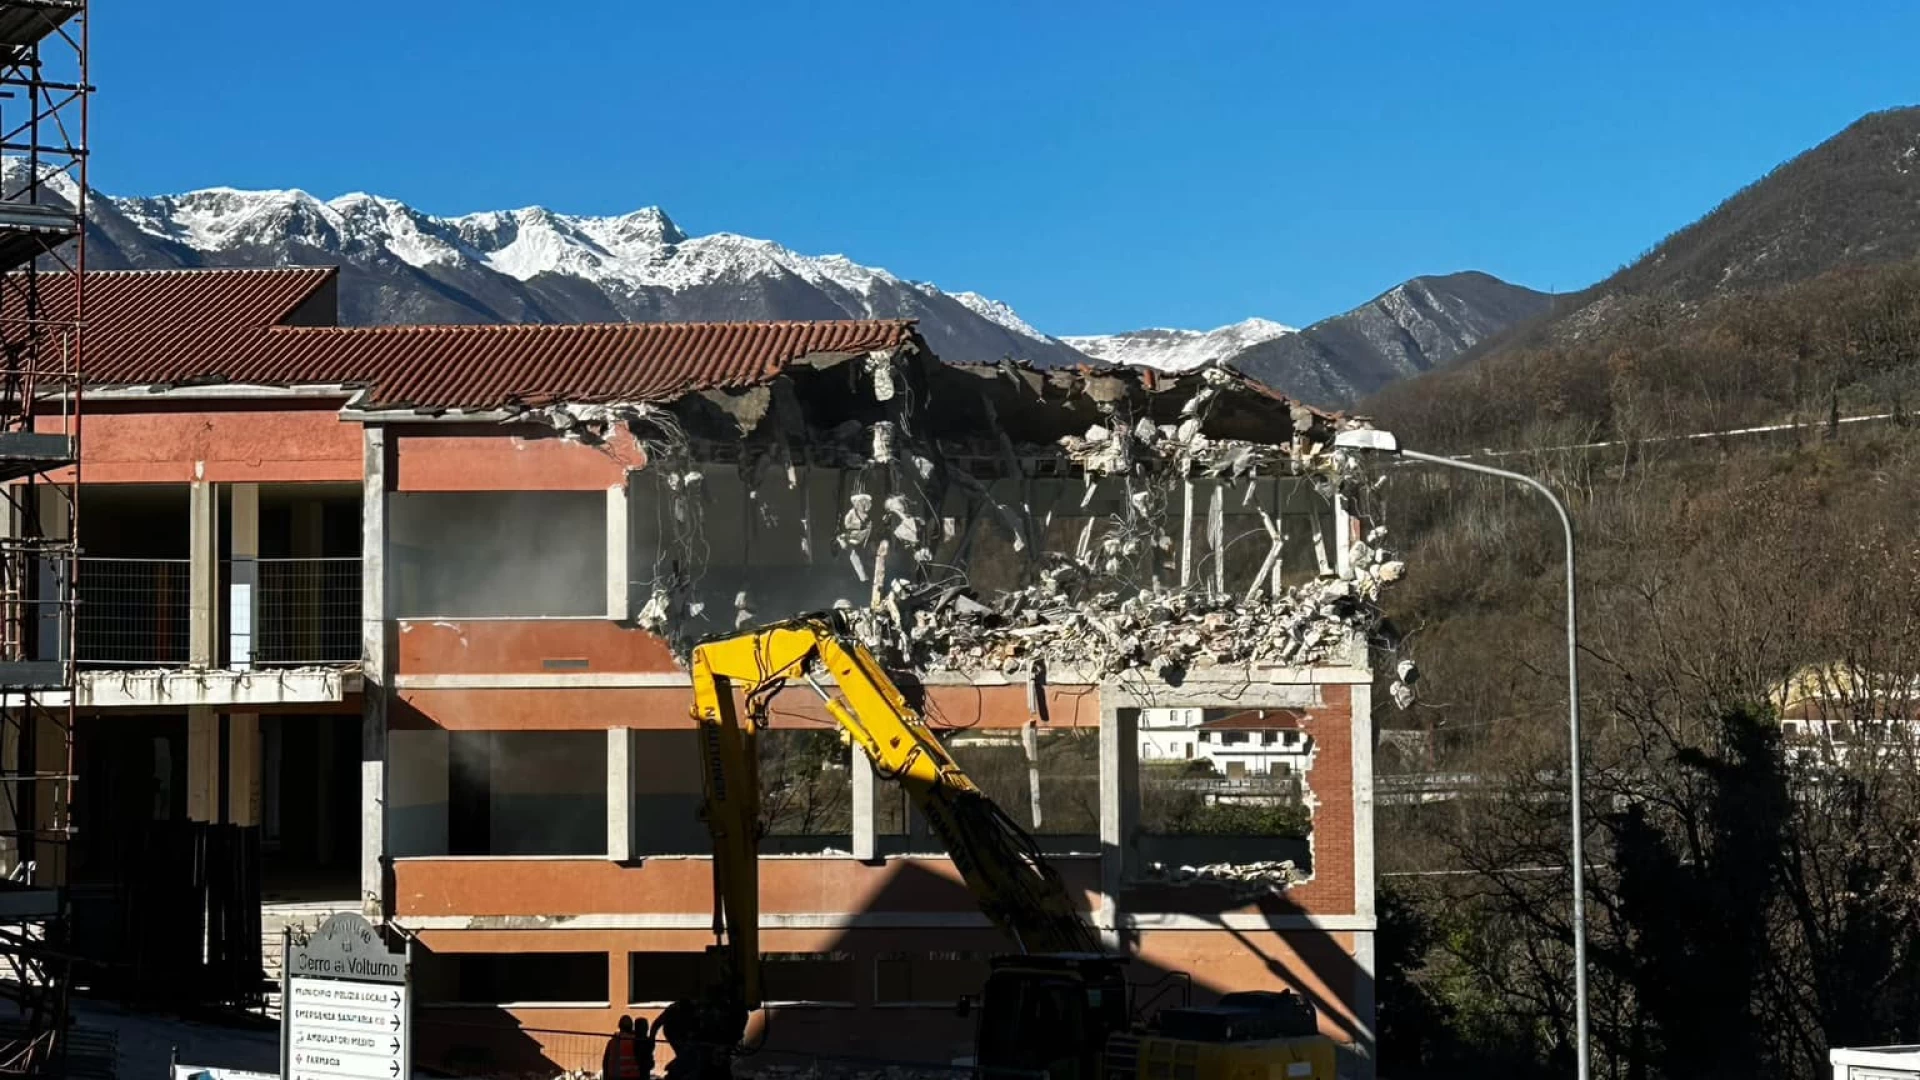 Cerro al Volturno: iniziata la demolizione del vecchio edificio scolastico. Il sindaco Di Ianni: “Chiudiamo una pagina importante della nostra storia locale. Ora proiettati al futuro”.